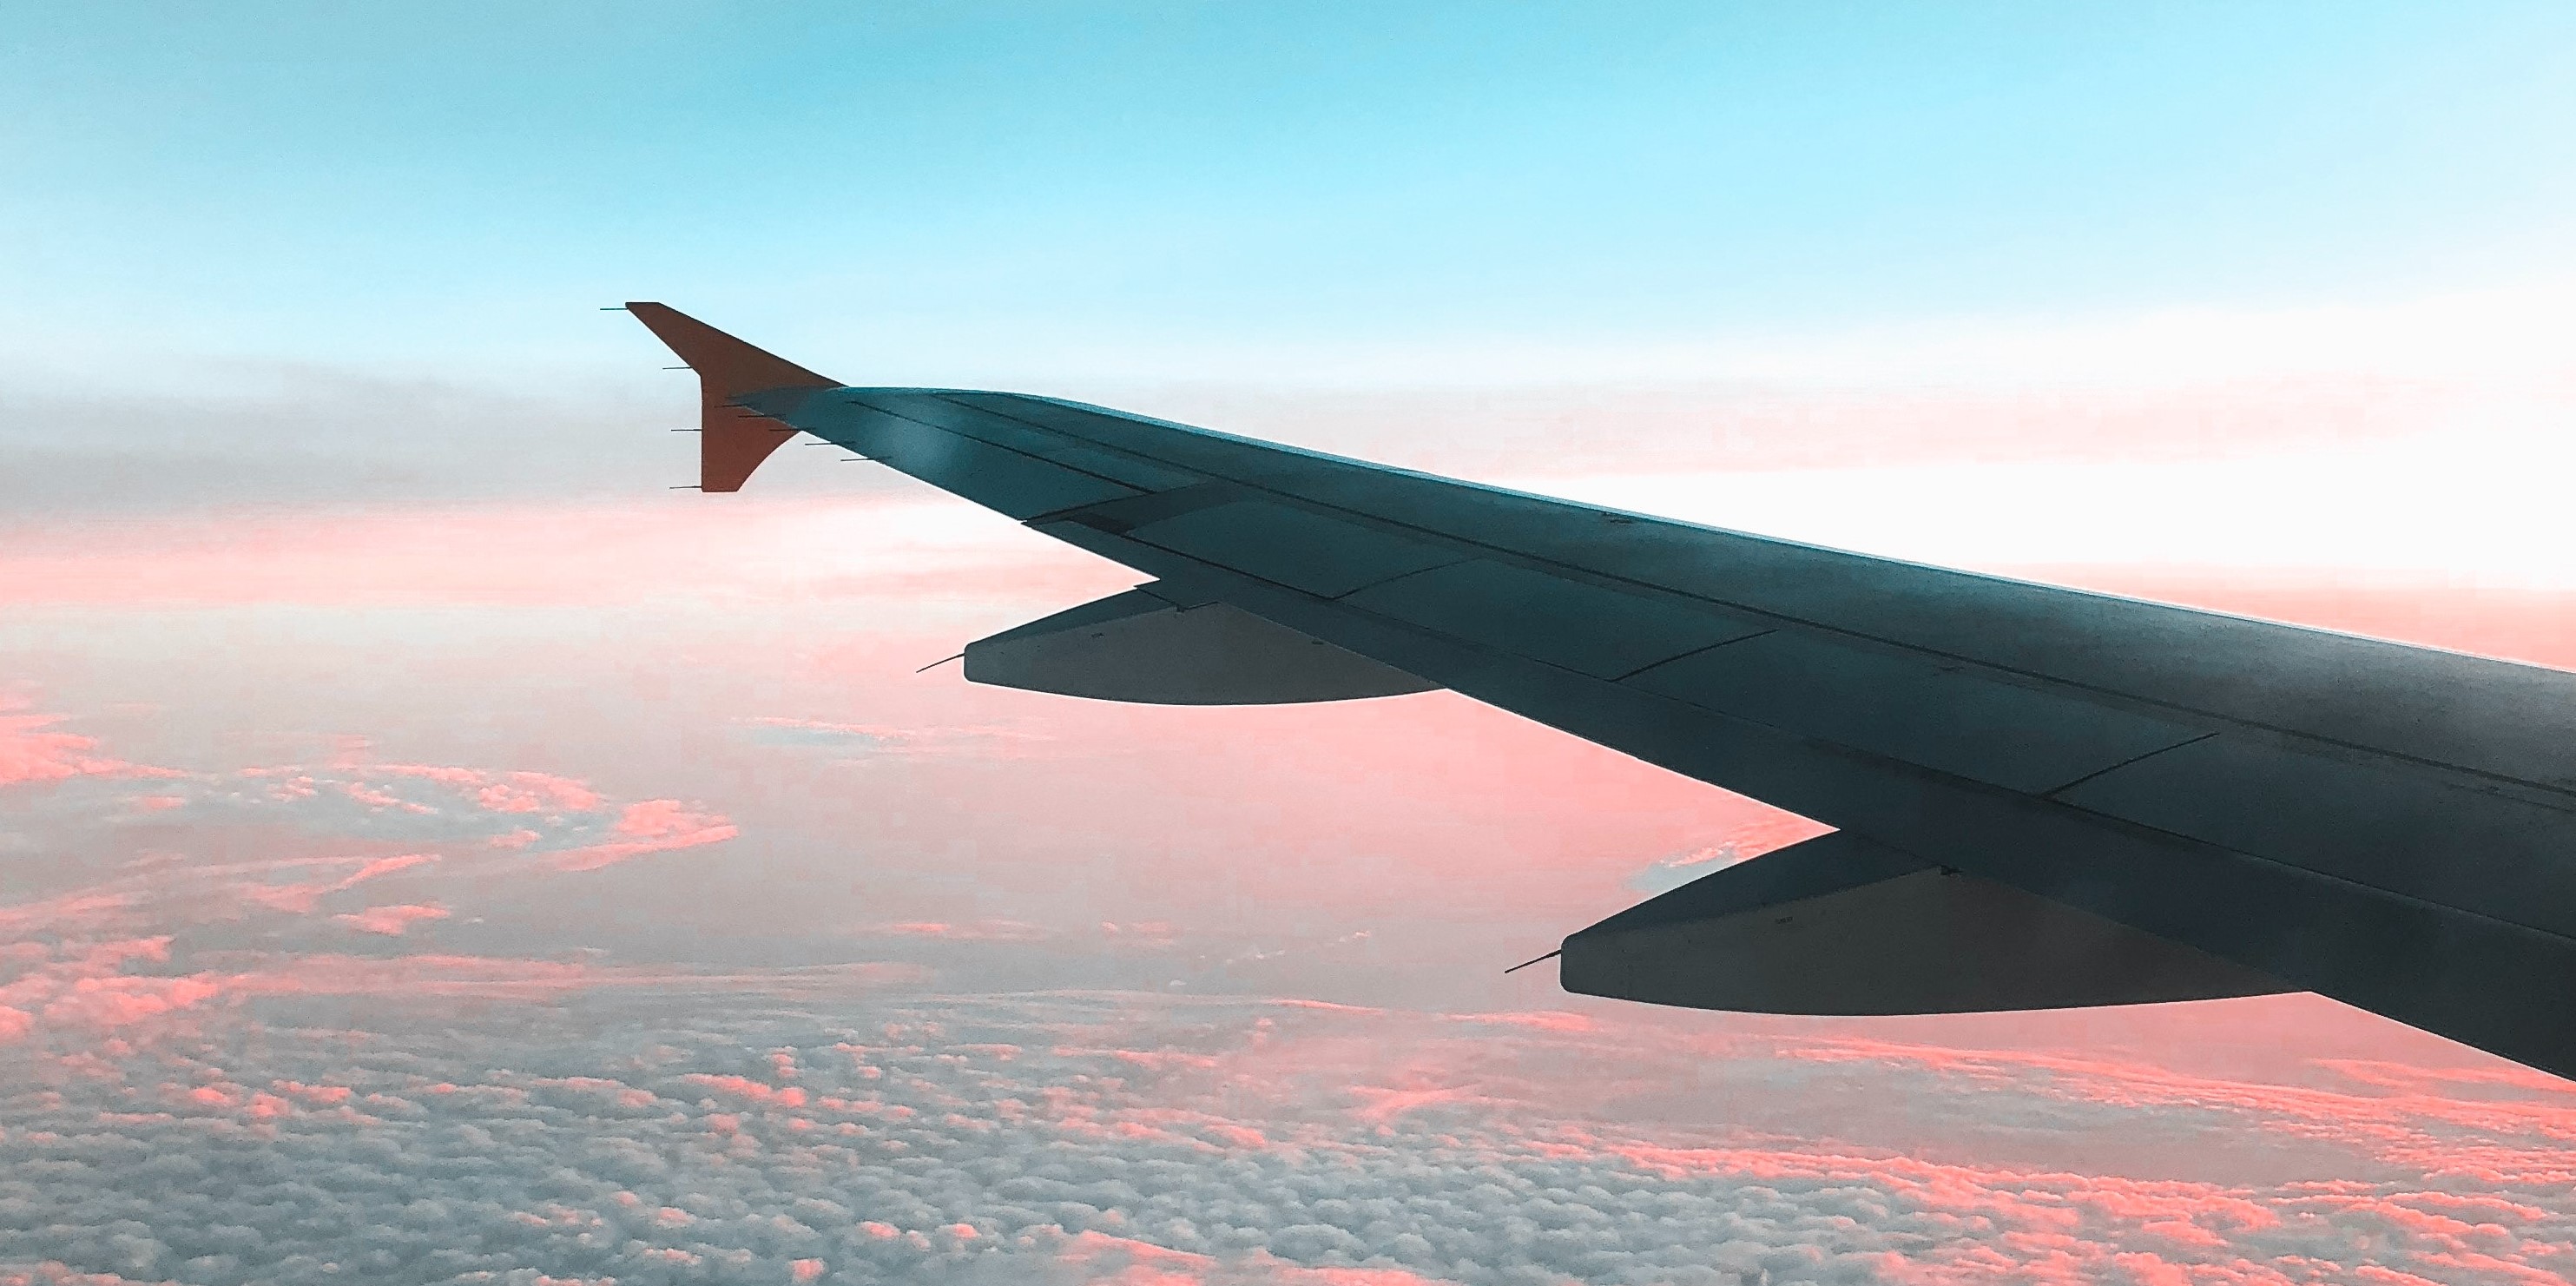 L'ala di un aereo sopra alcune nuvole con sfumature blu e rosa